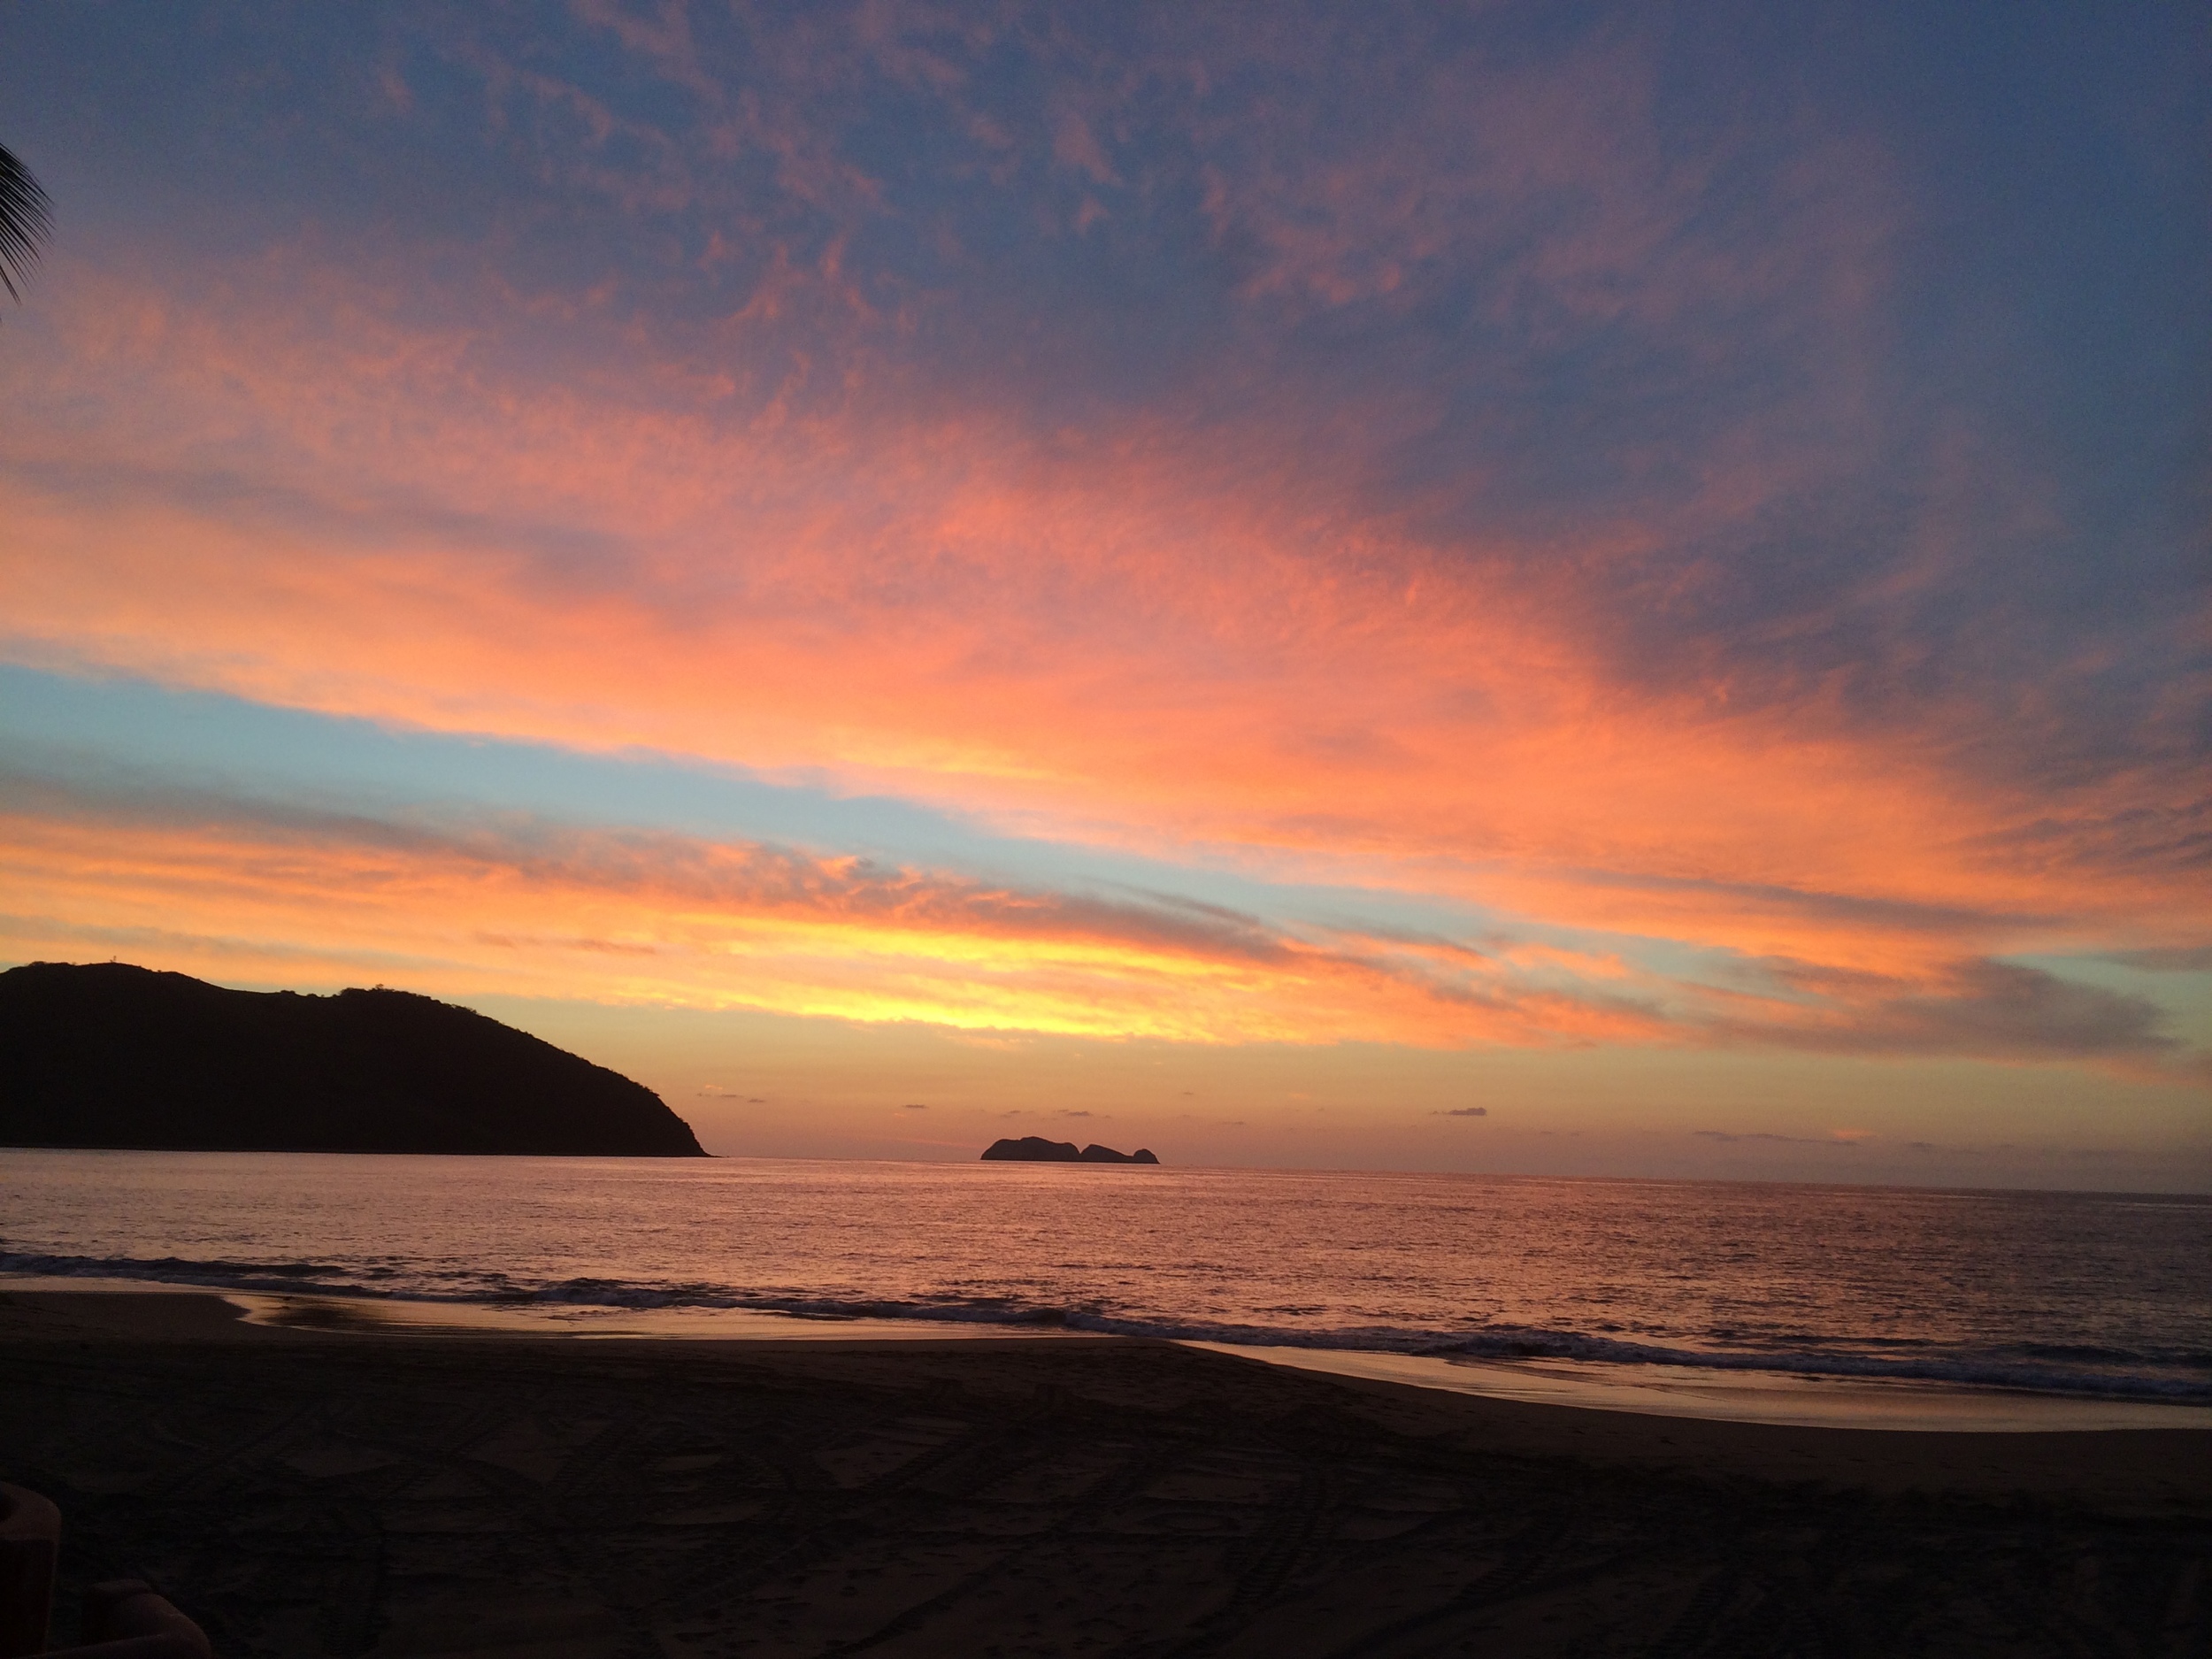 Mexico '15 - Amazing sunsets